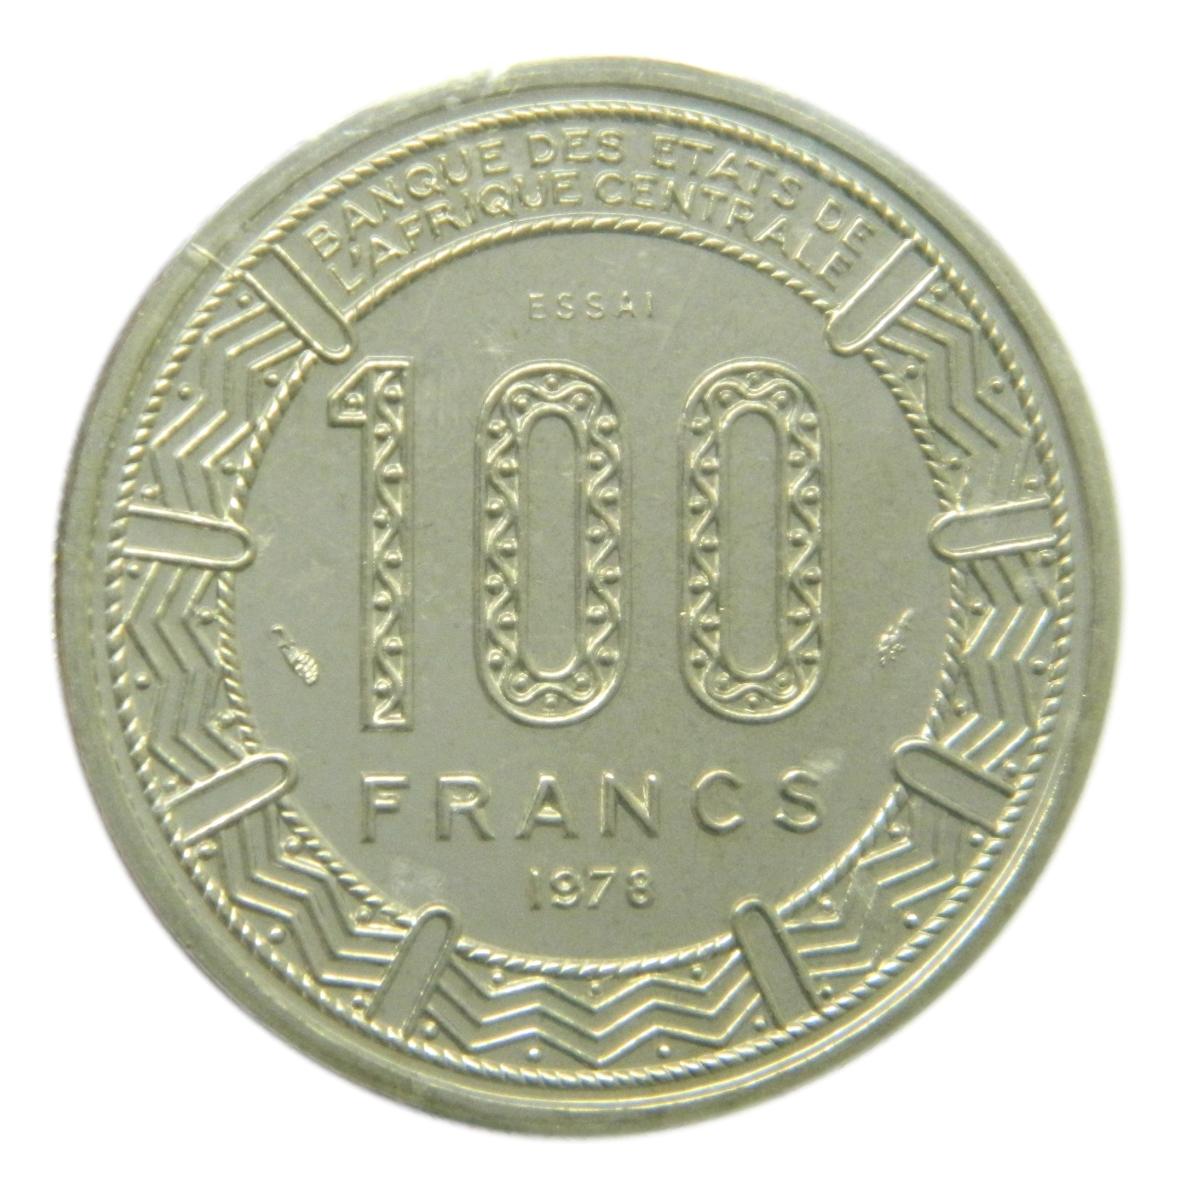 1978 - AFRICA CENTRAL - 100 FRANCS - ESSAI - COLONIA FRANCESA - S9/516